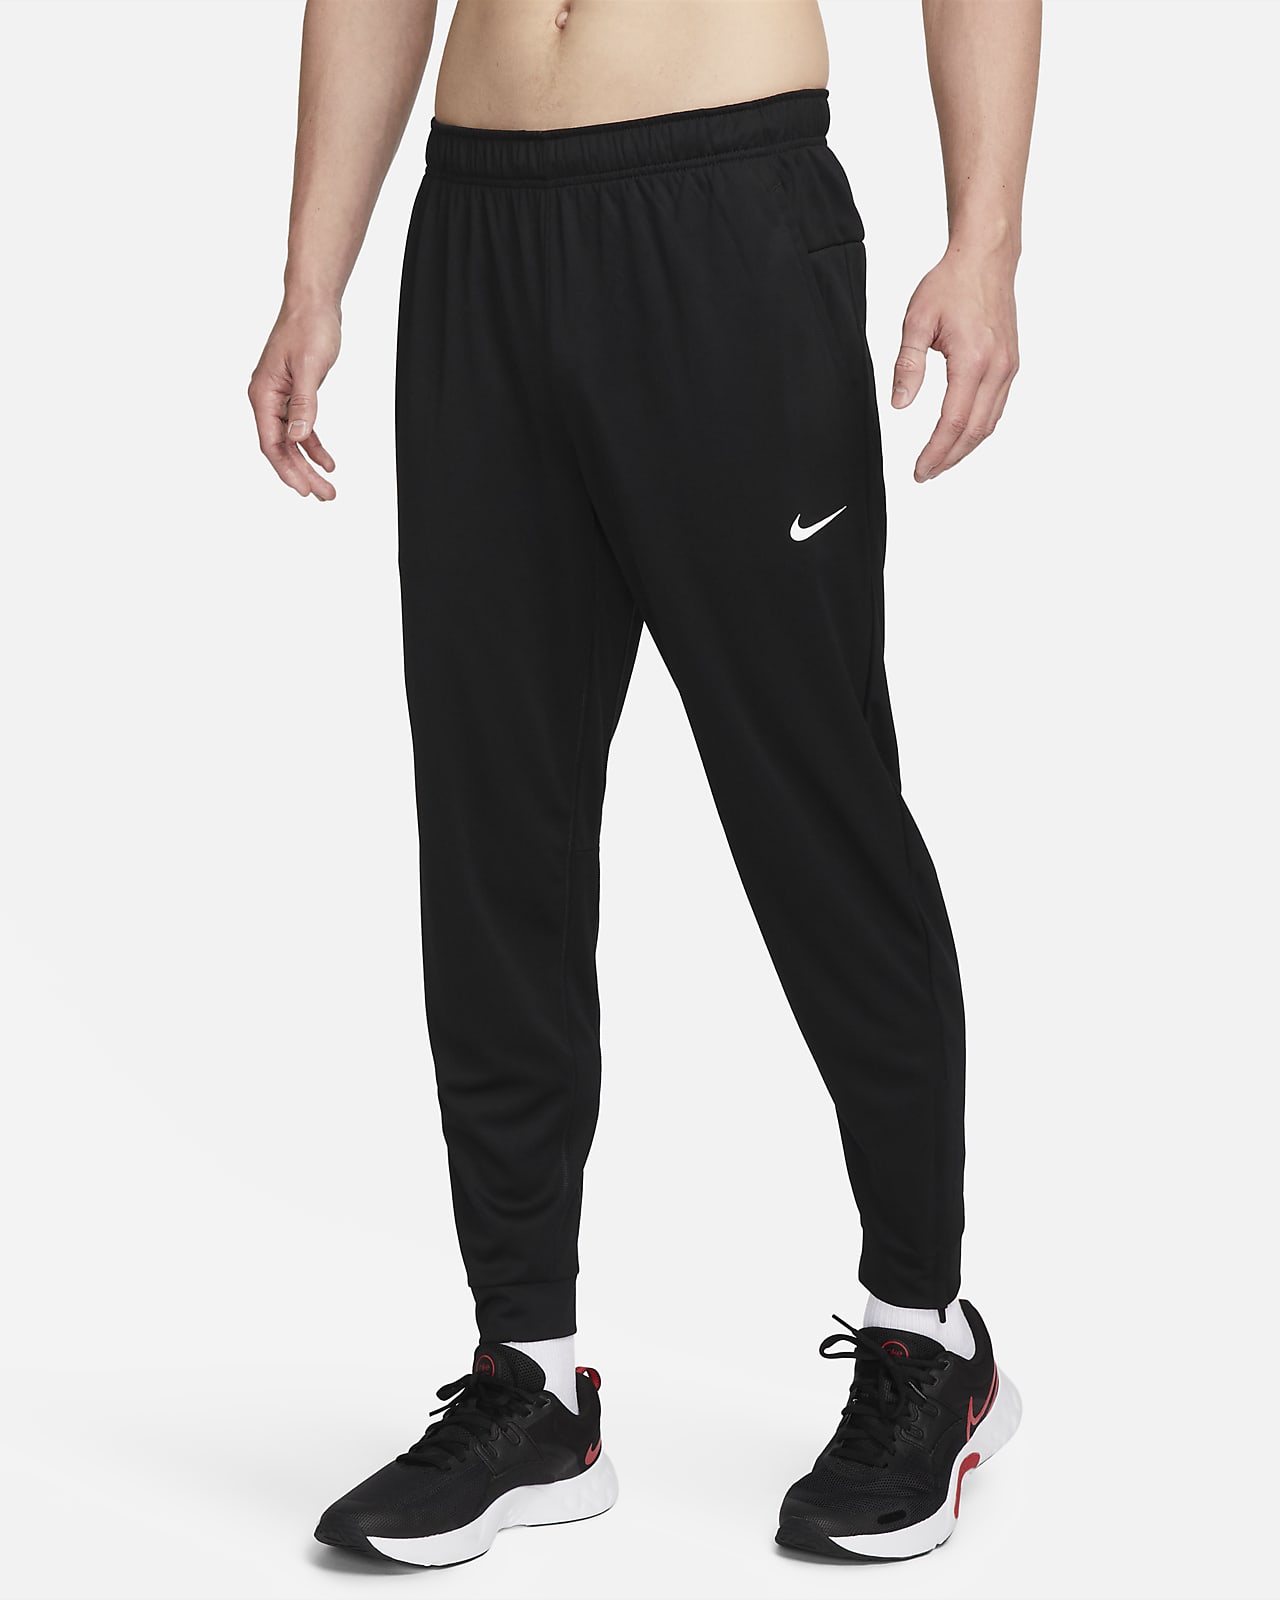 Pantalon fuselé Dri-FIT Nike Totality pour homme